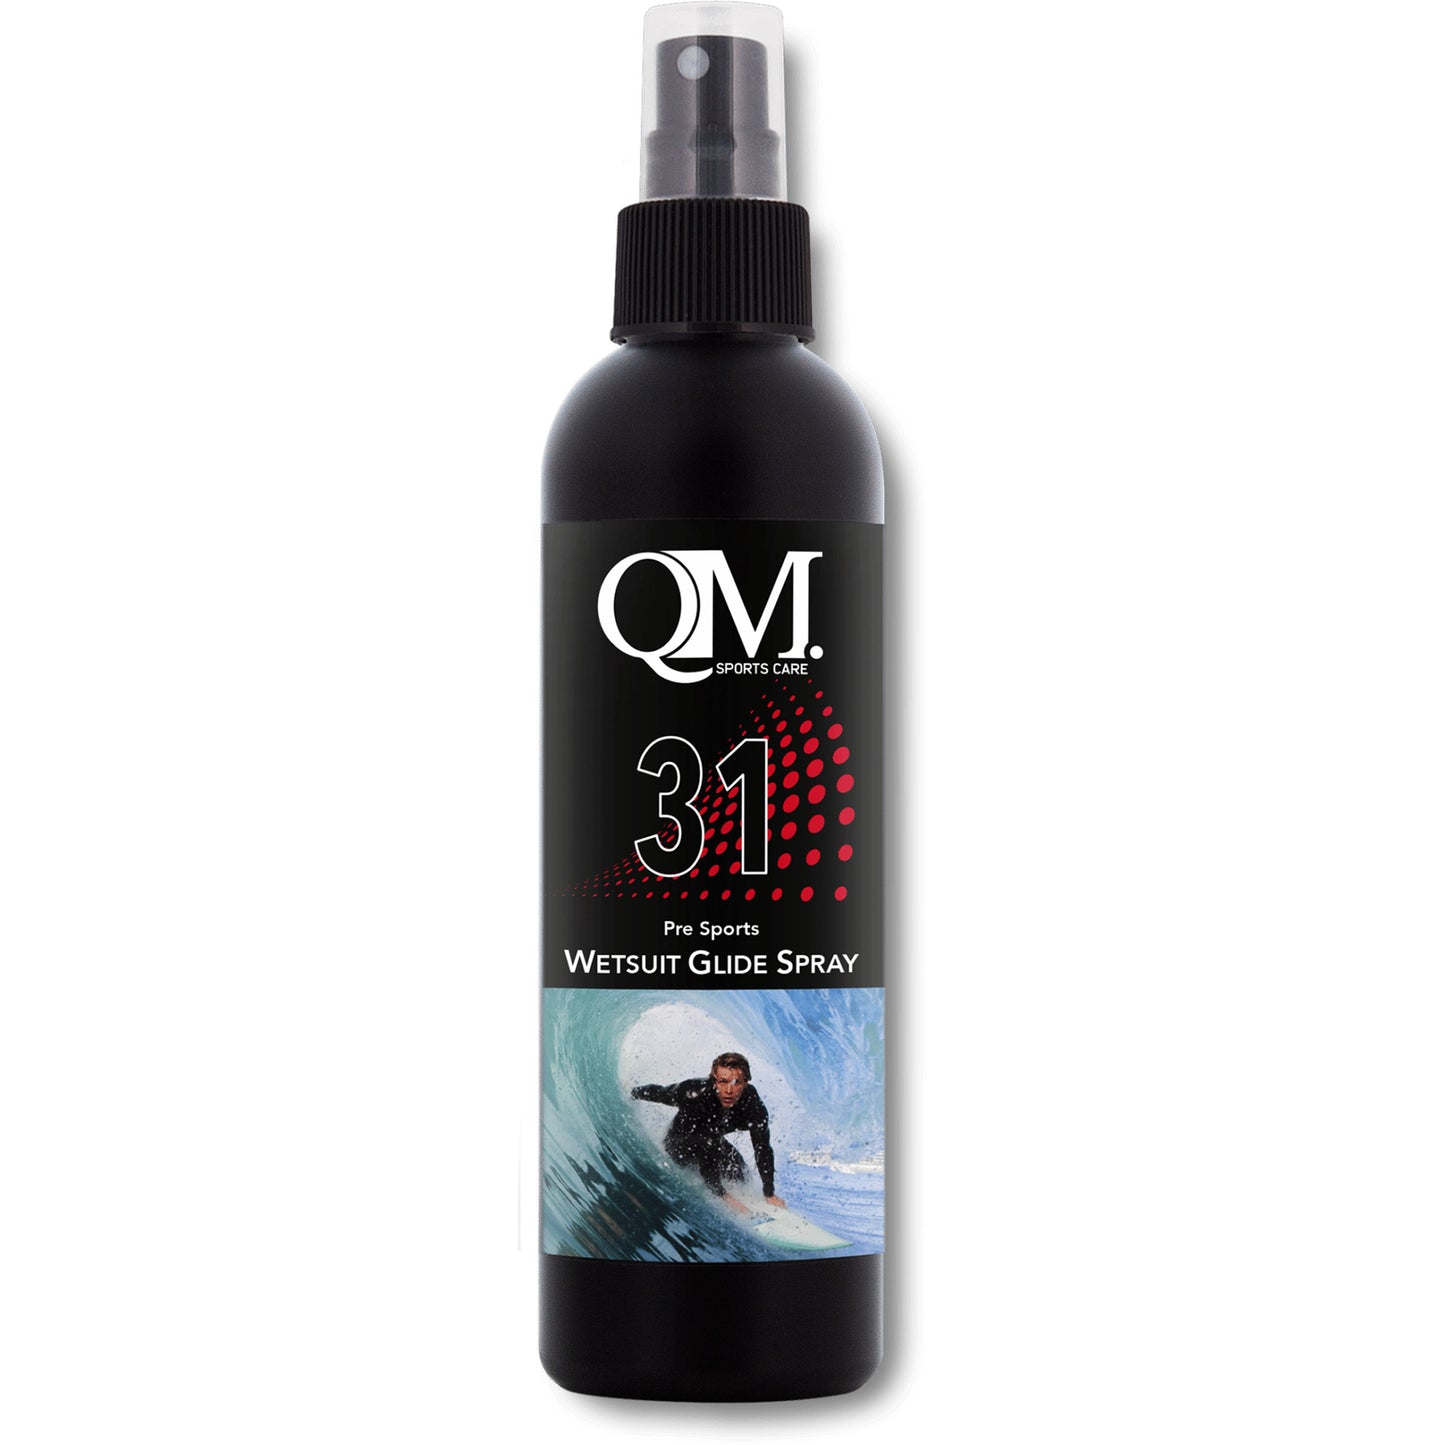 Qm 31 wetsuit glide spray 200ml